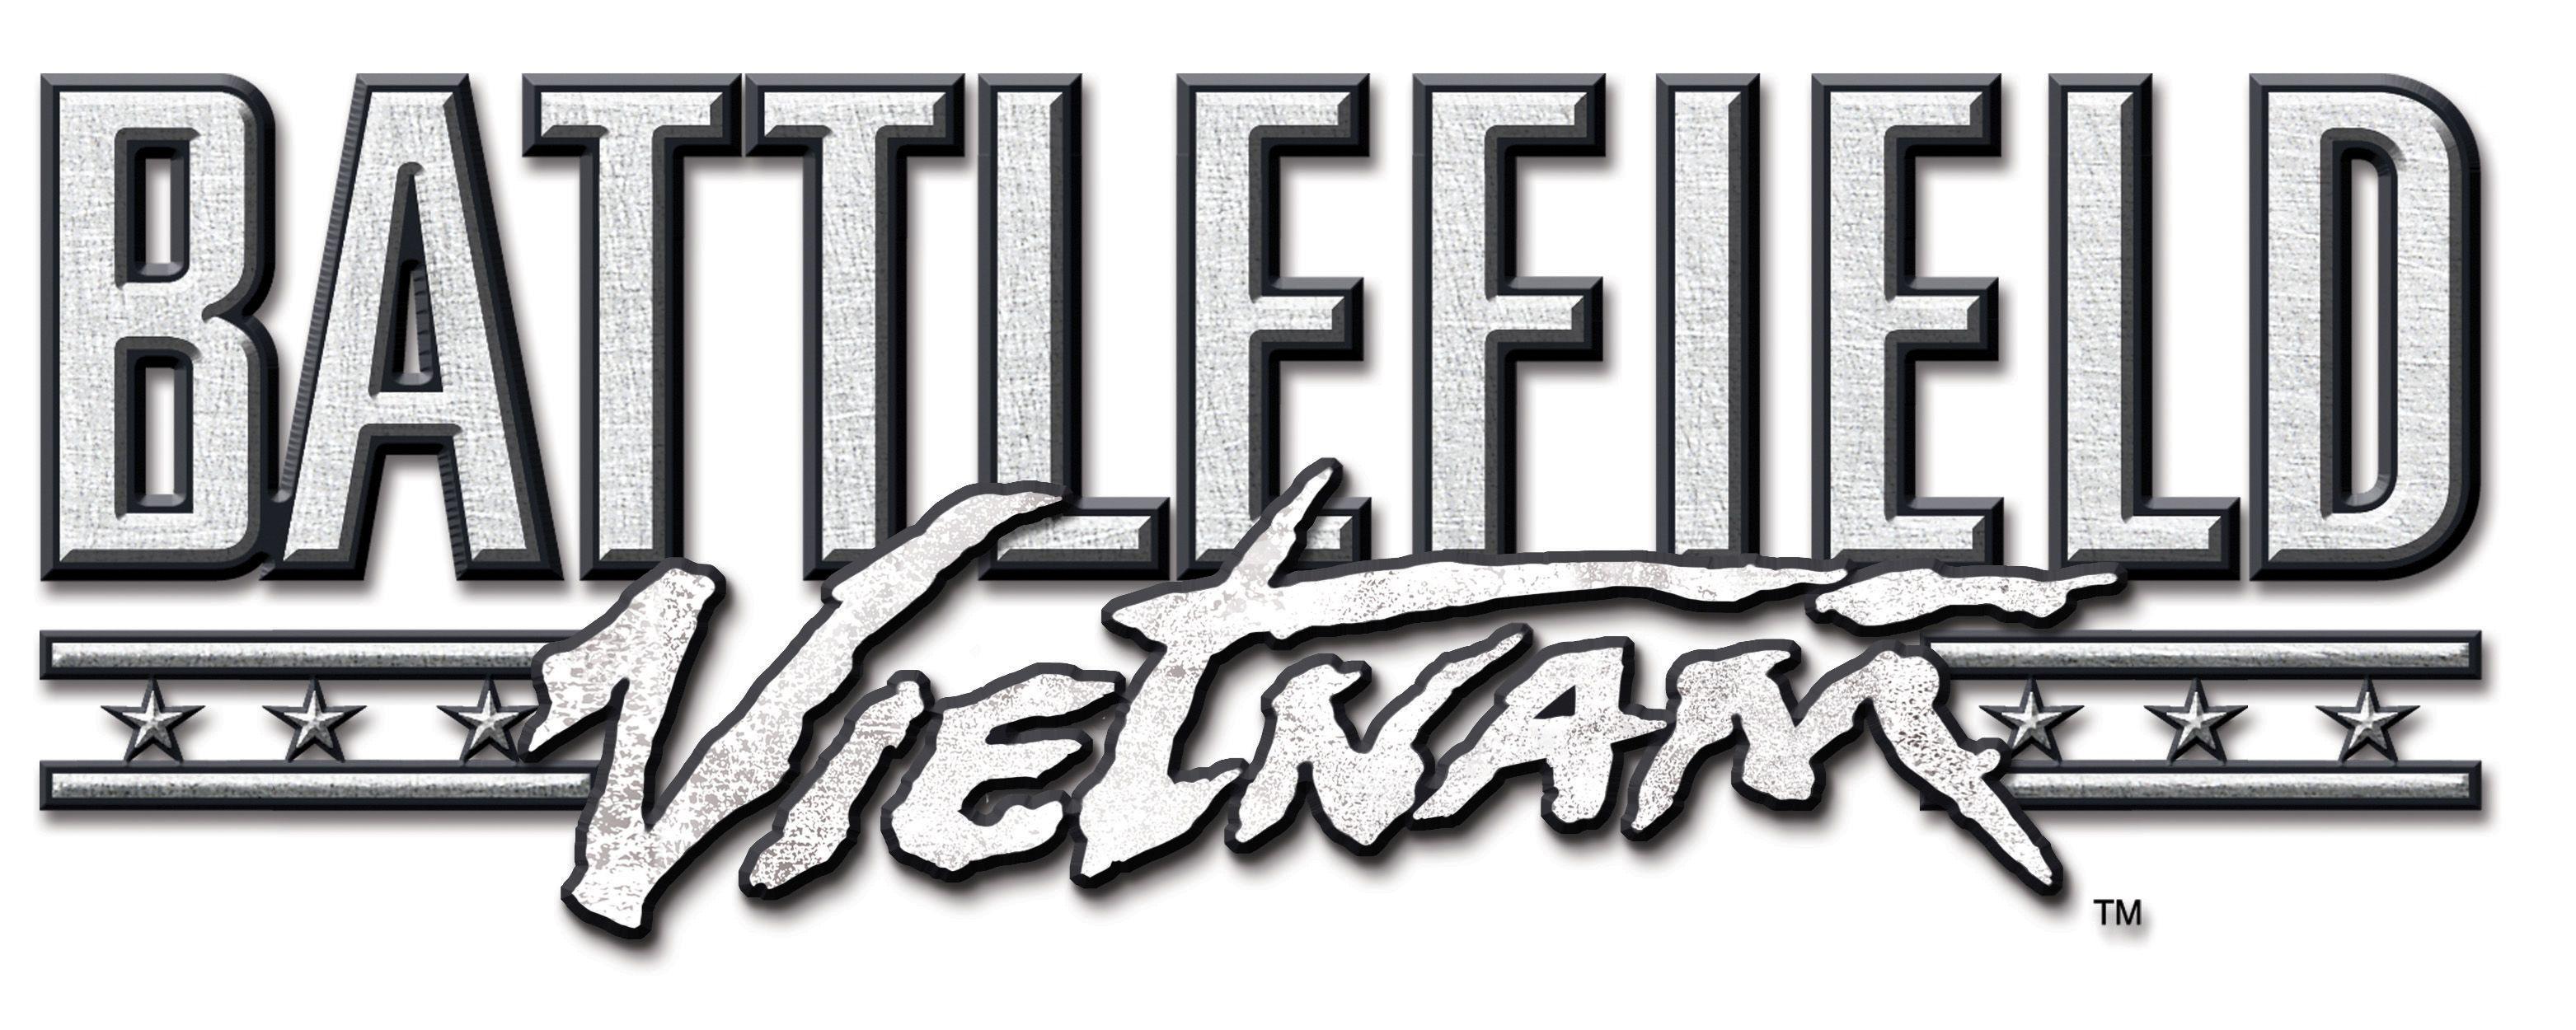 Battlefield Logo - Battlefield Vietnam